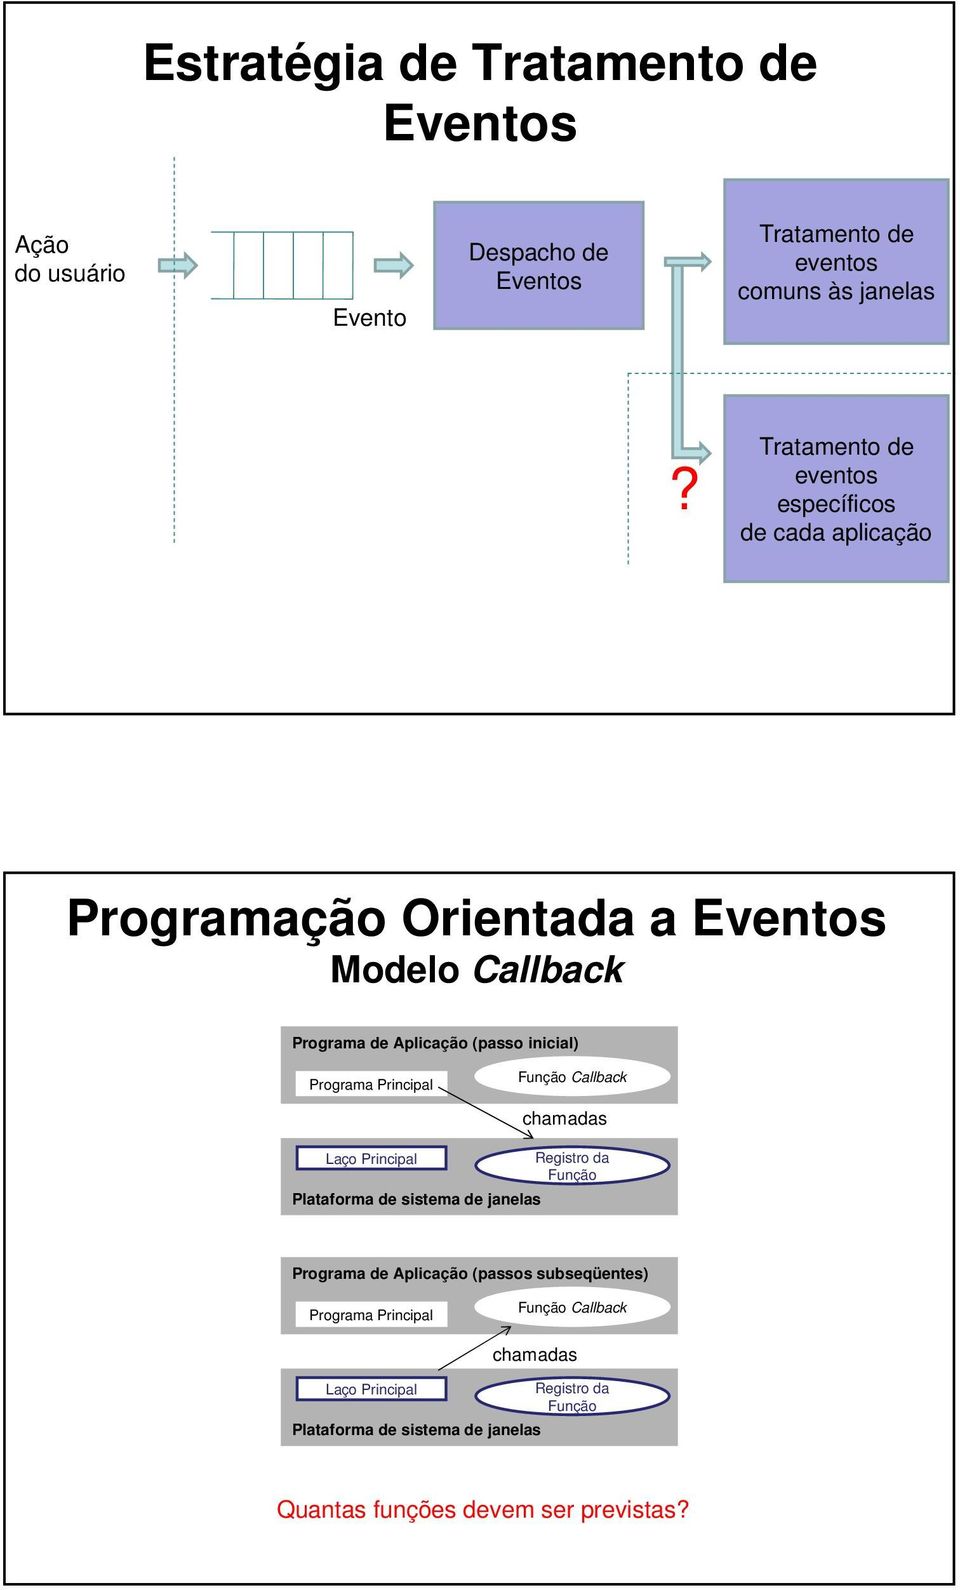 Programa Principal Função Callback Laço Principal Plataforma de sistema de janelas chamadas Registro da Função Programa de Aplicação